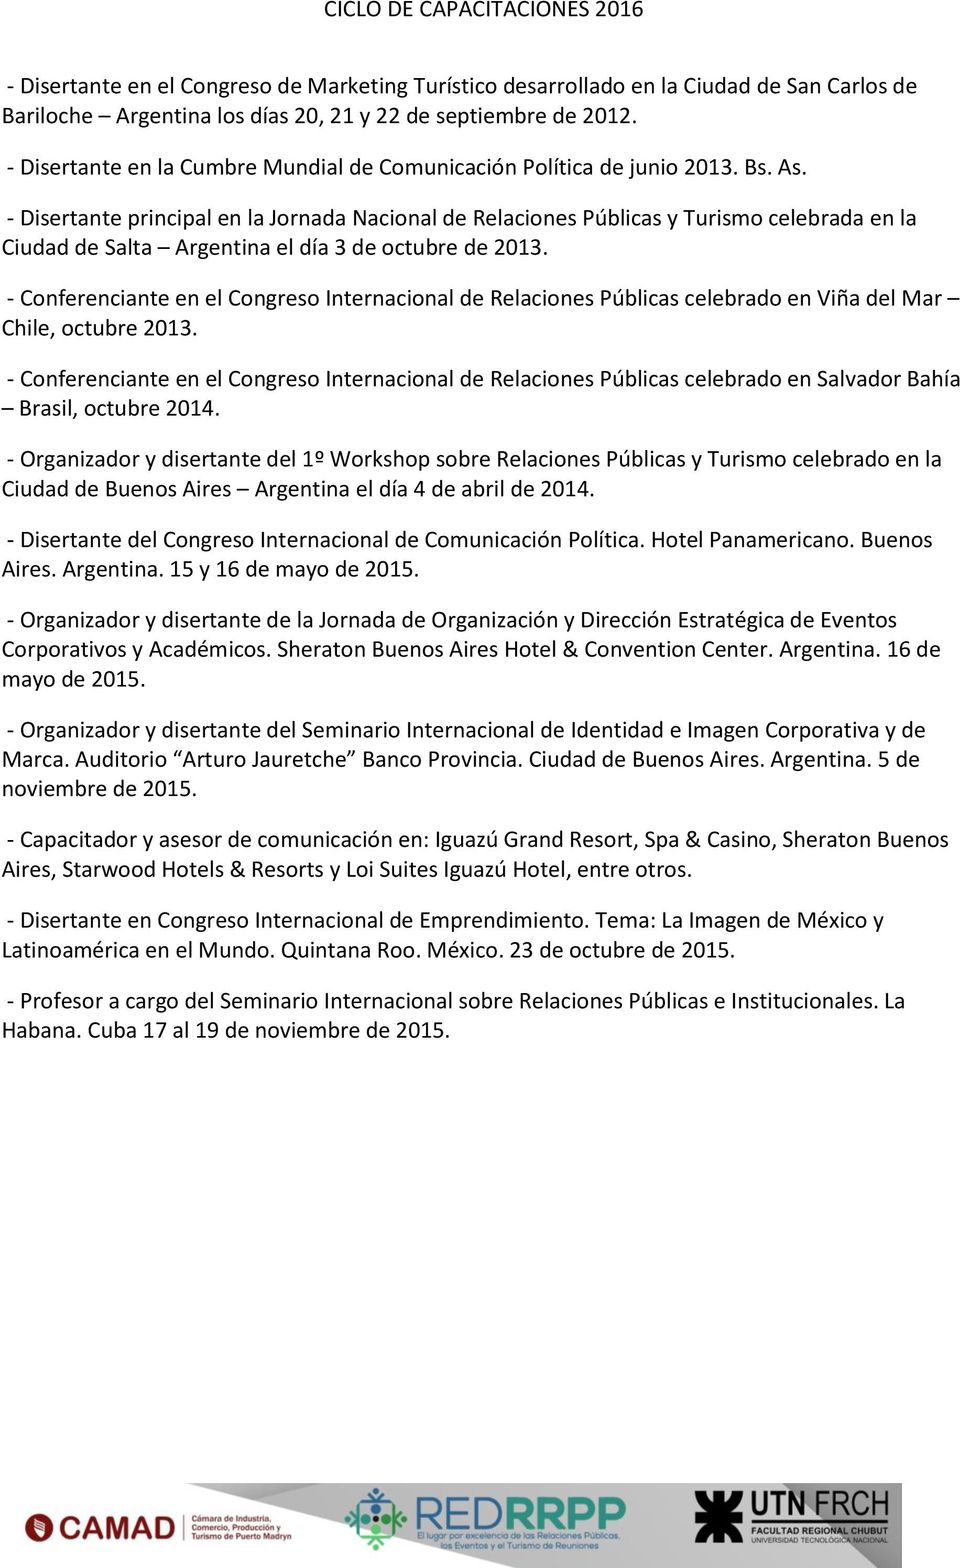 - Disertante principal en la Jornada Nacional de Relaciones Públicas y Turismo celebrada en la Ciudad de Salta Argentina el día 3 de octubre de 2013.